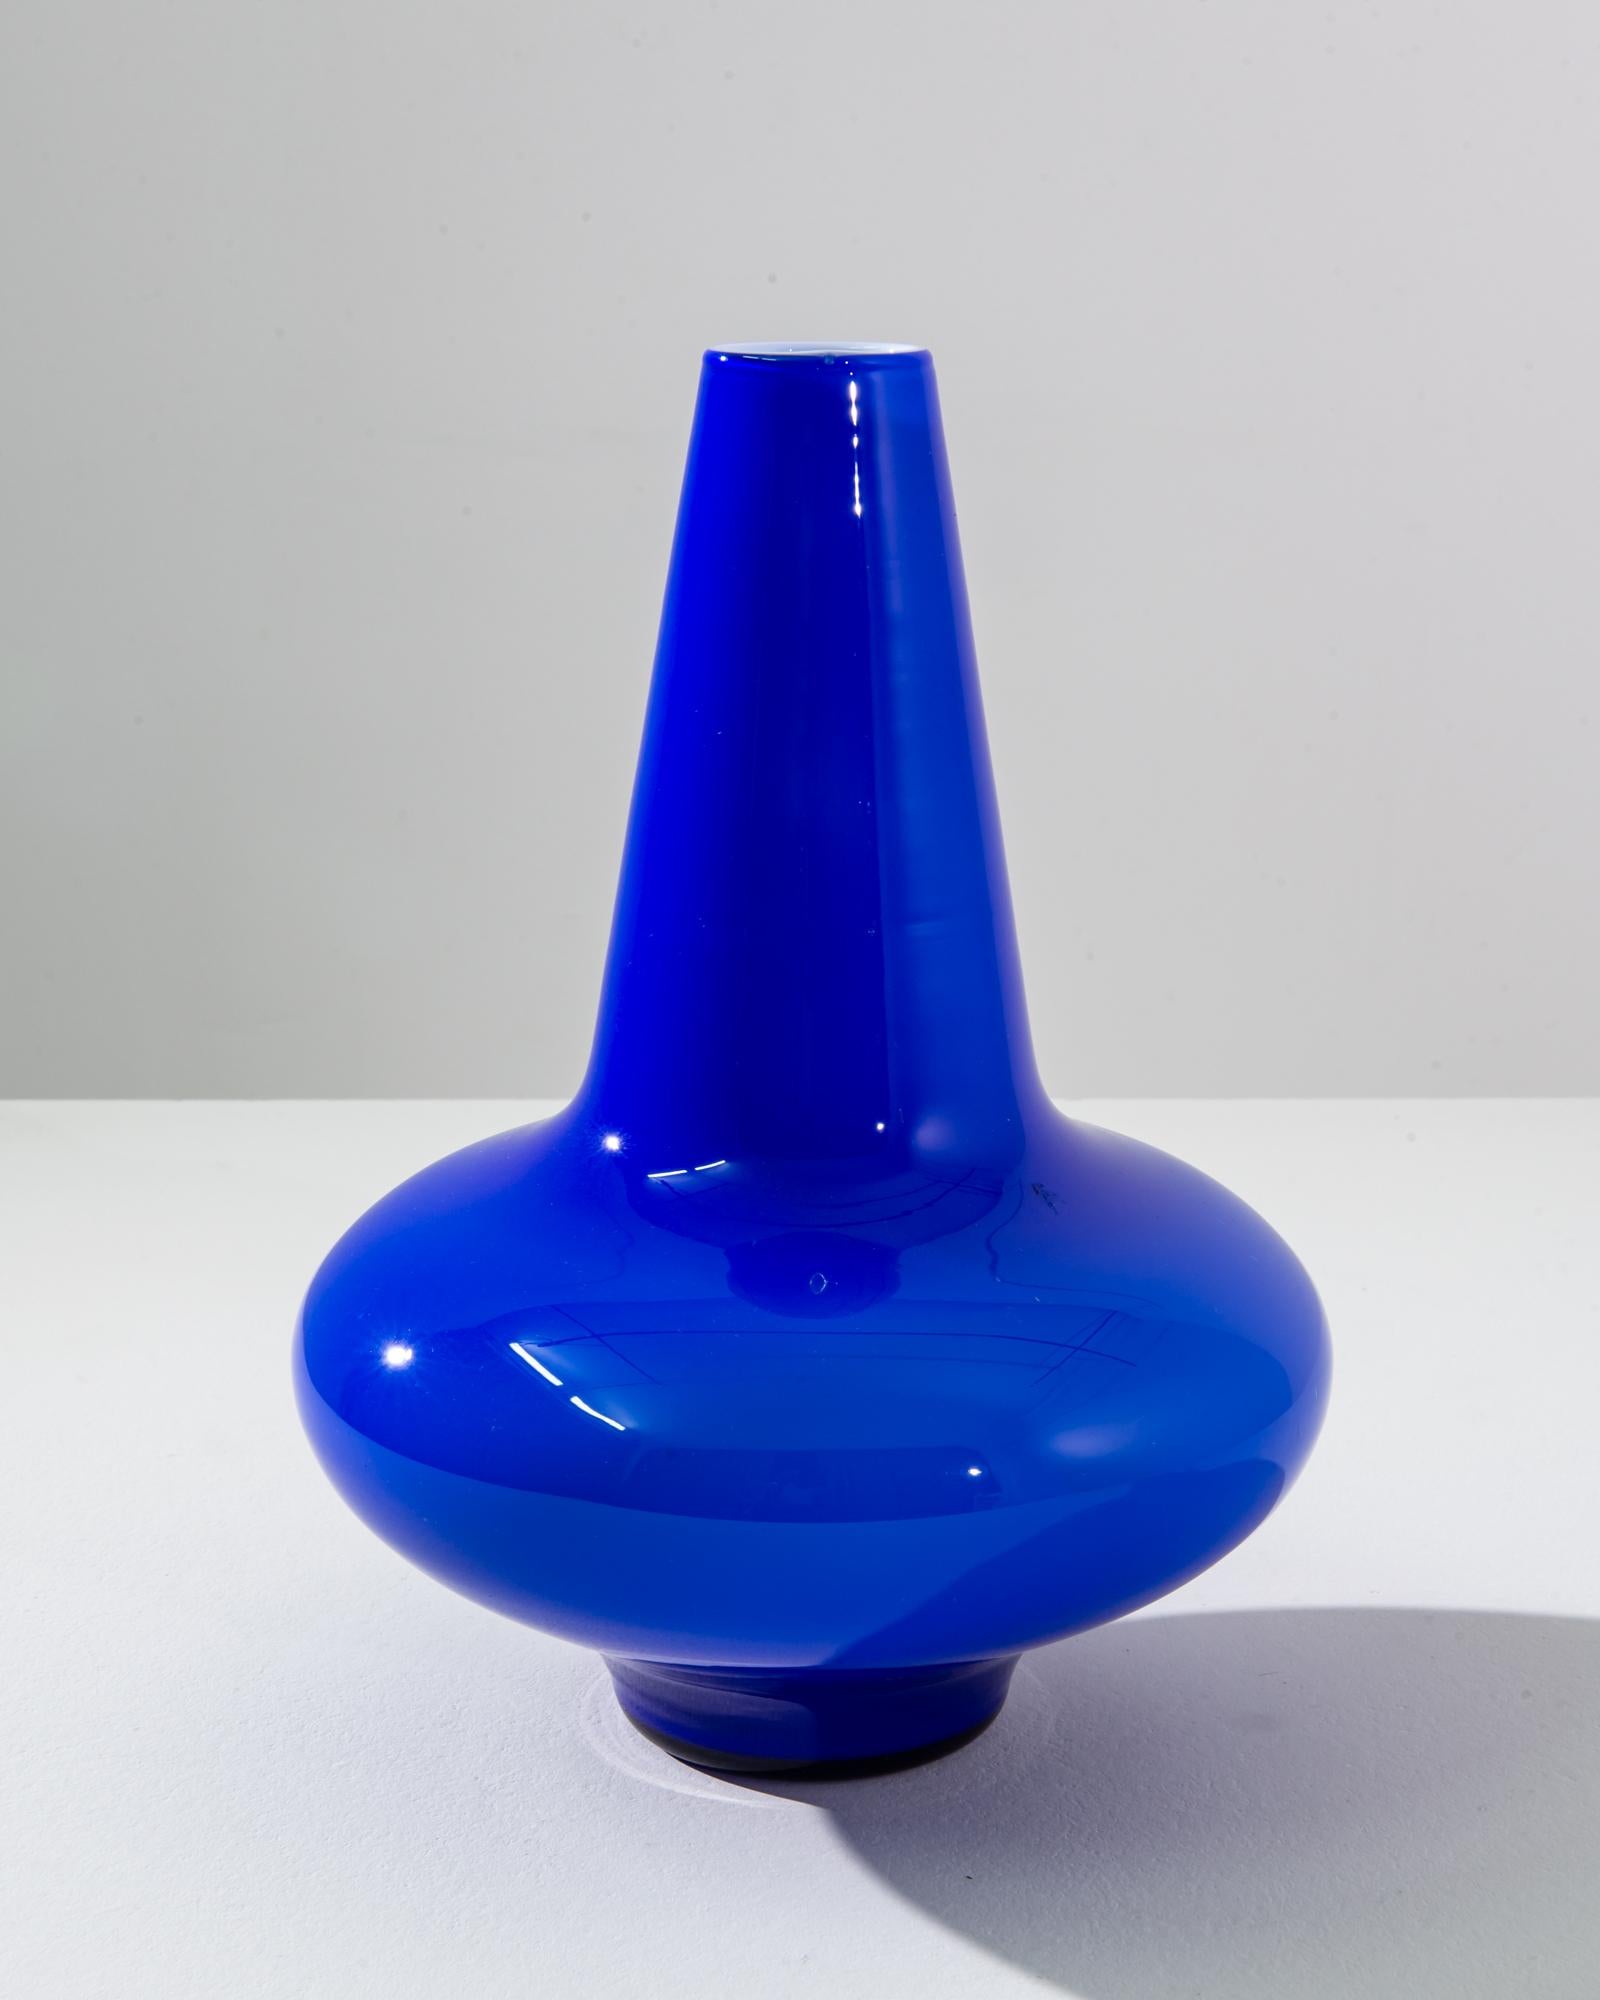 Ce vase en verre bleu italien des années 1960 est un véritable emblème du design moderne du milieu du siècle. Son bleu cobalt vibrant captive instantanément et ajoute une touche de couleur à n'importe quelle pièce. Son col épuré et conique s'élève